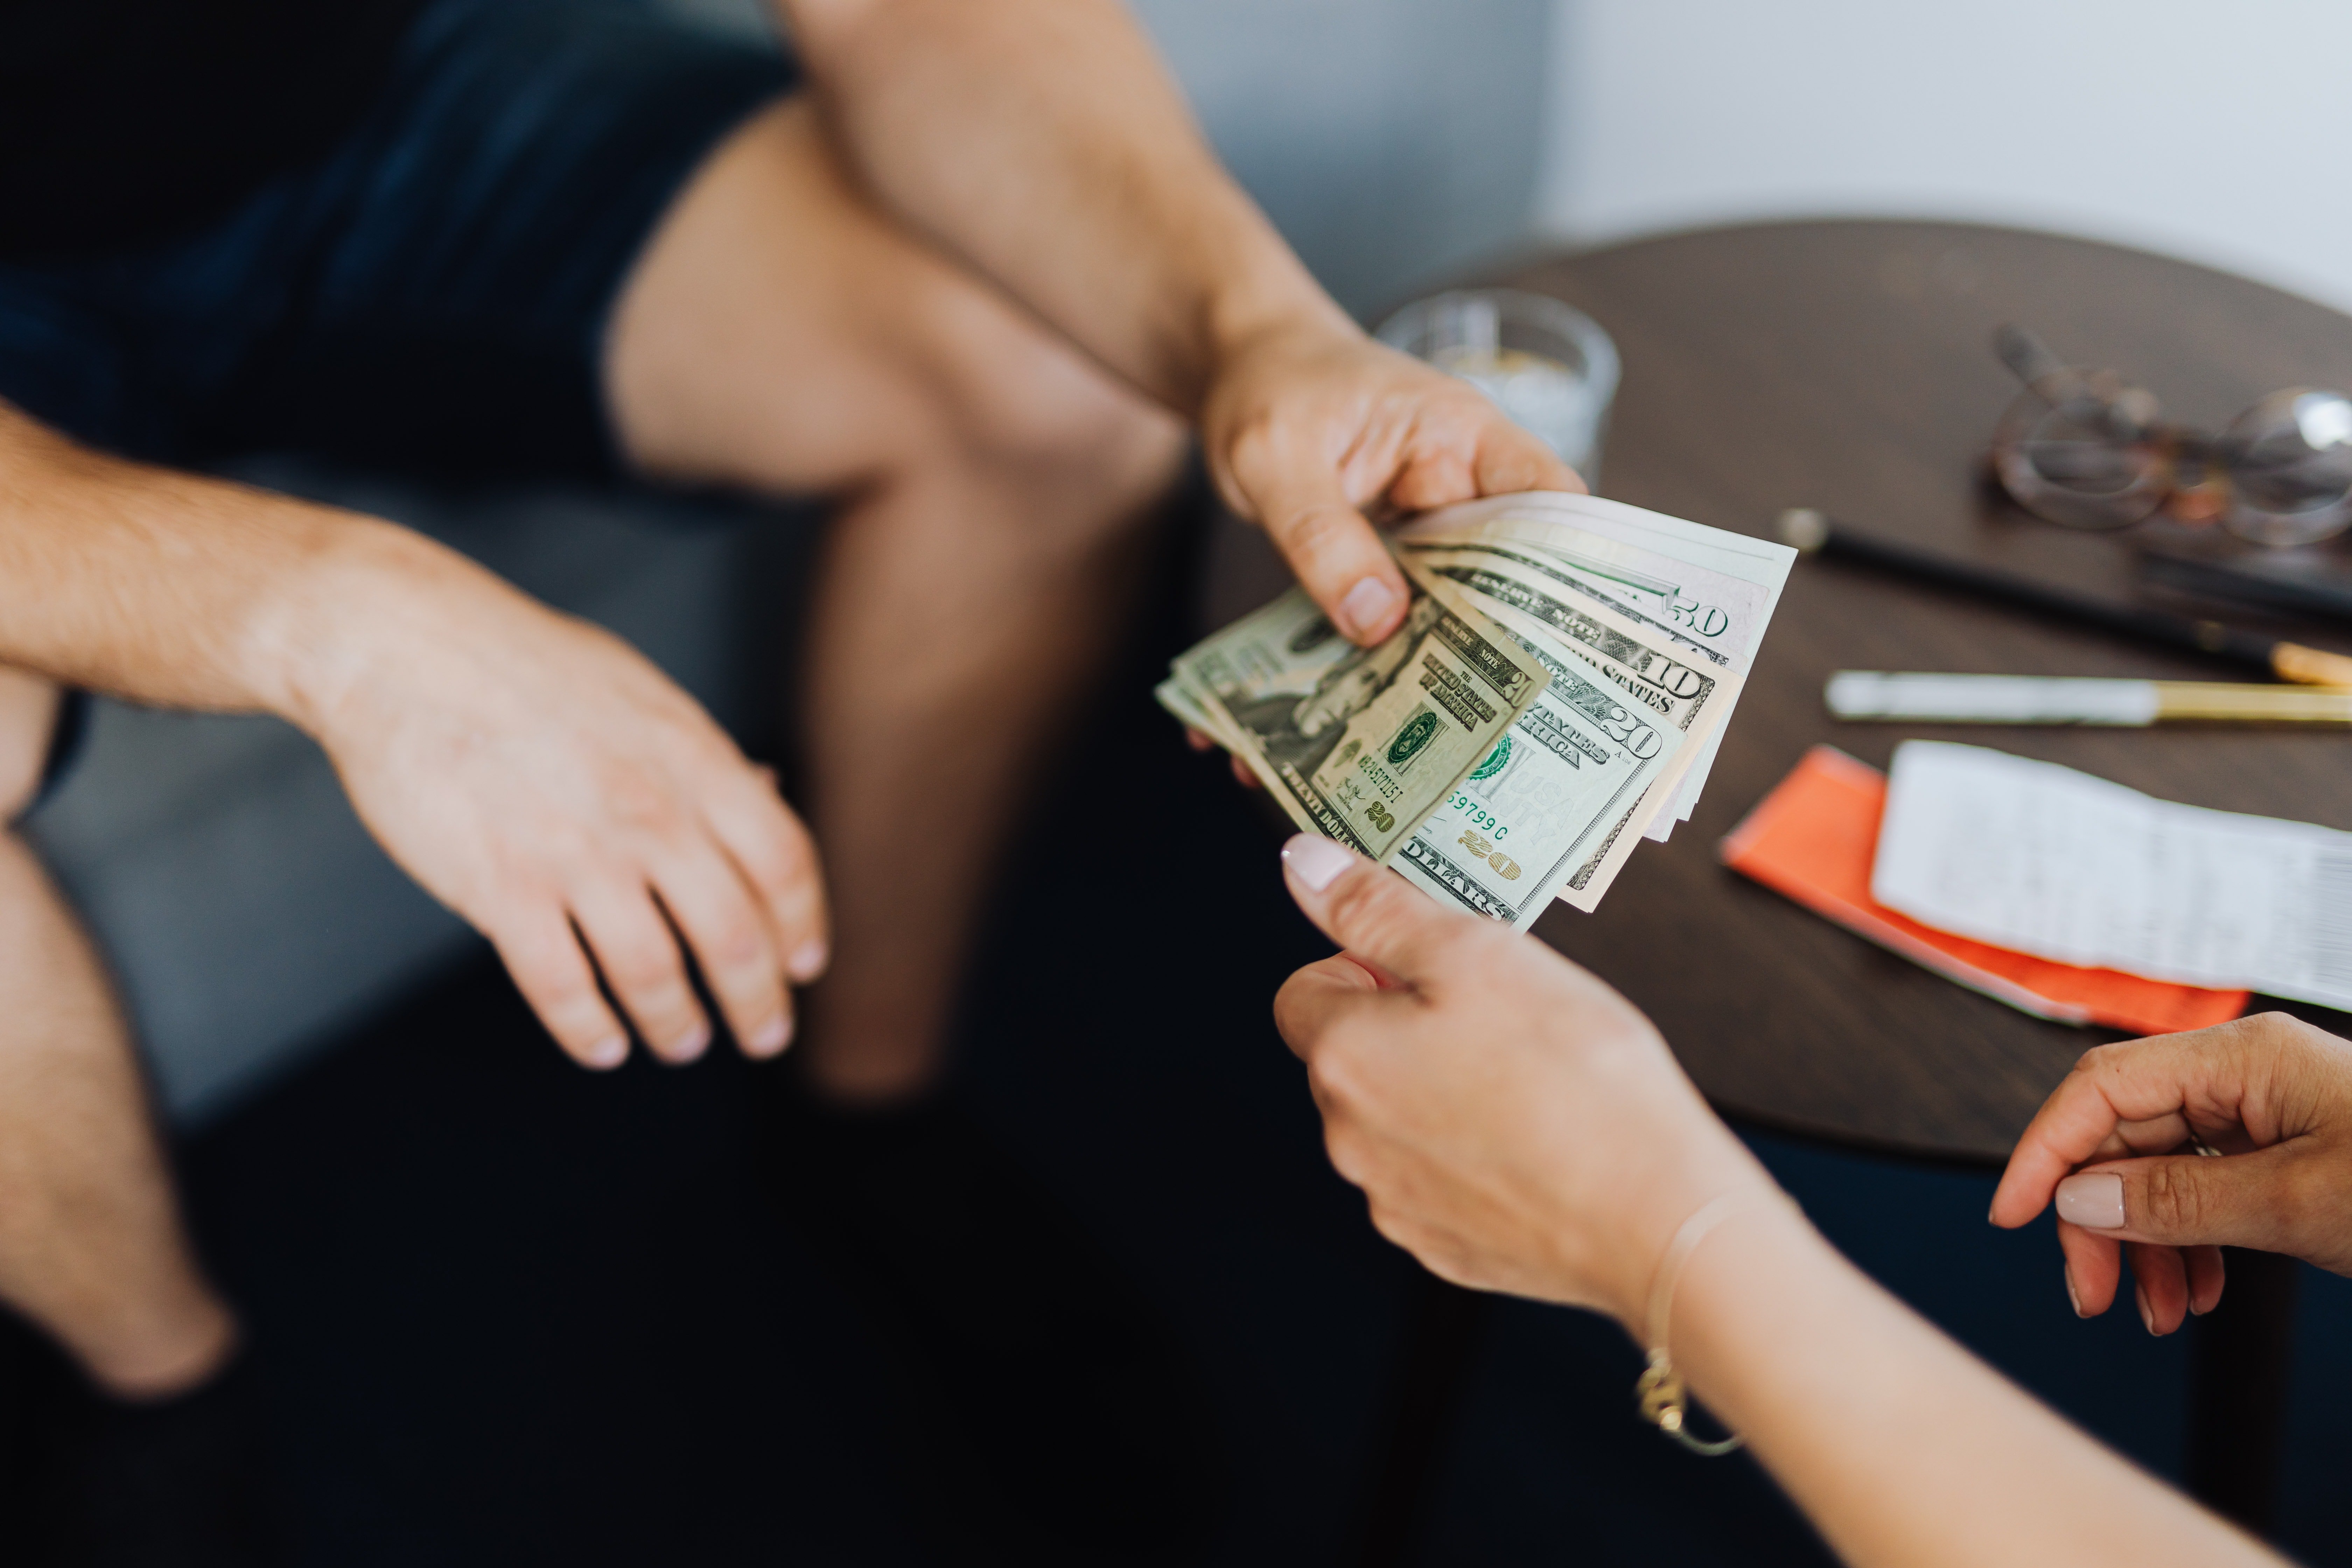 Deux personnes échangeant de l'argent | Source : Pexels